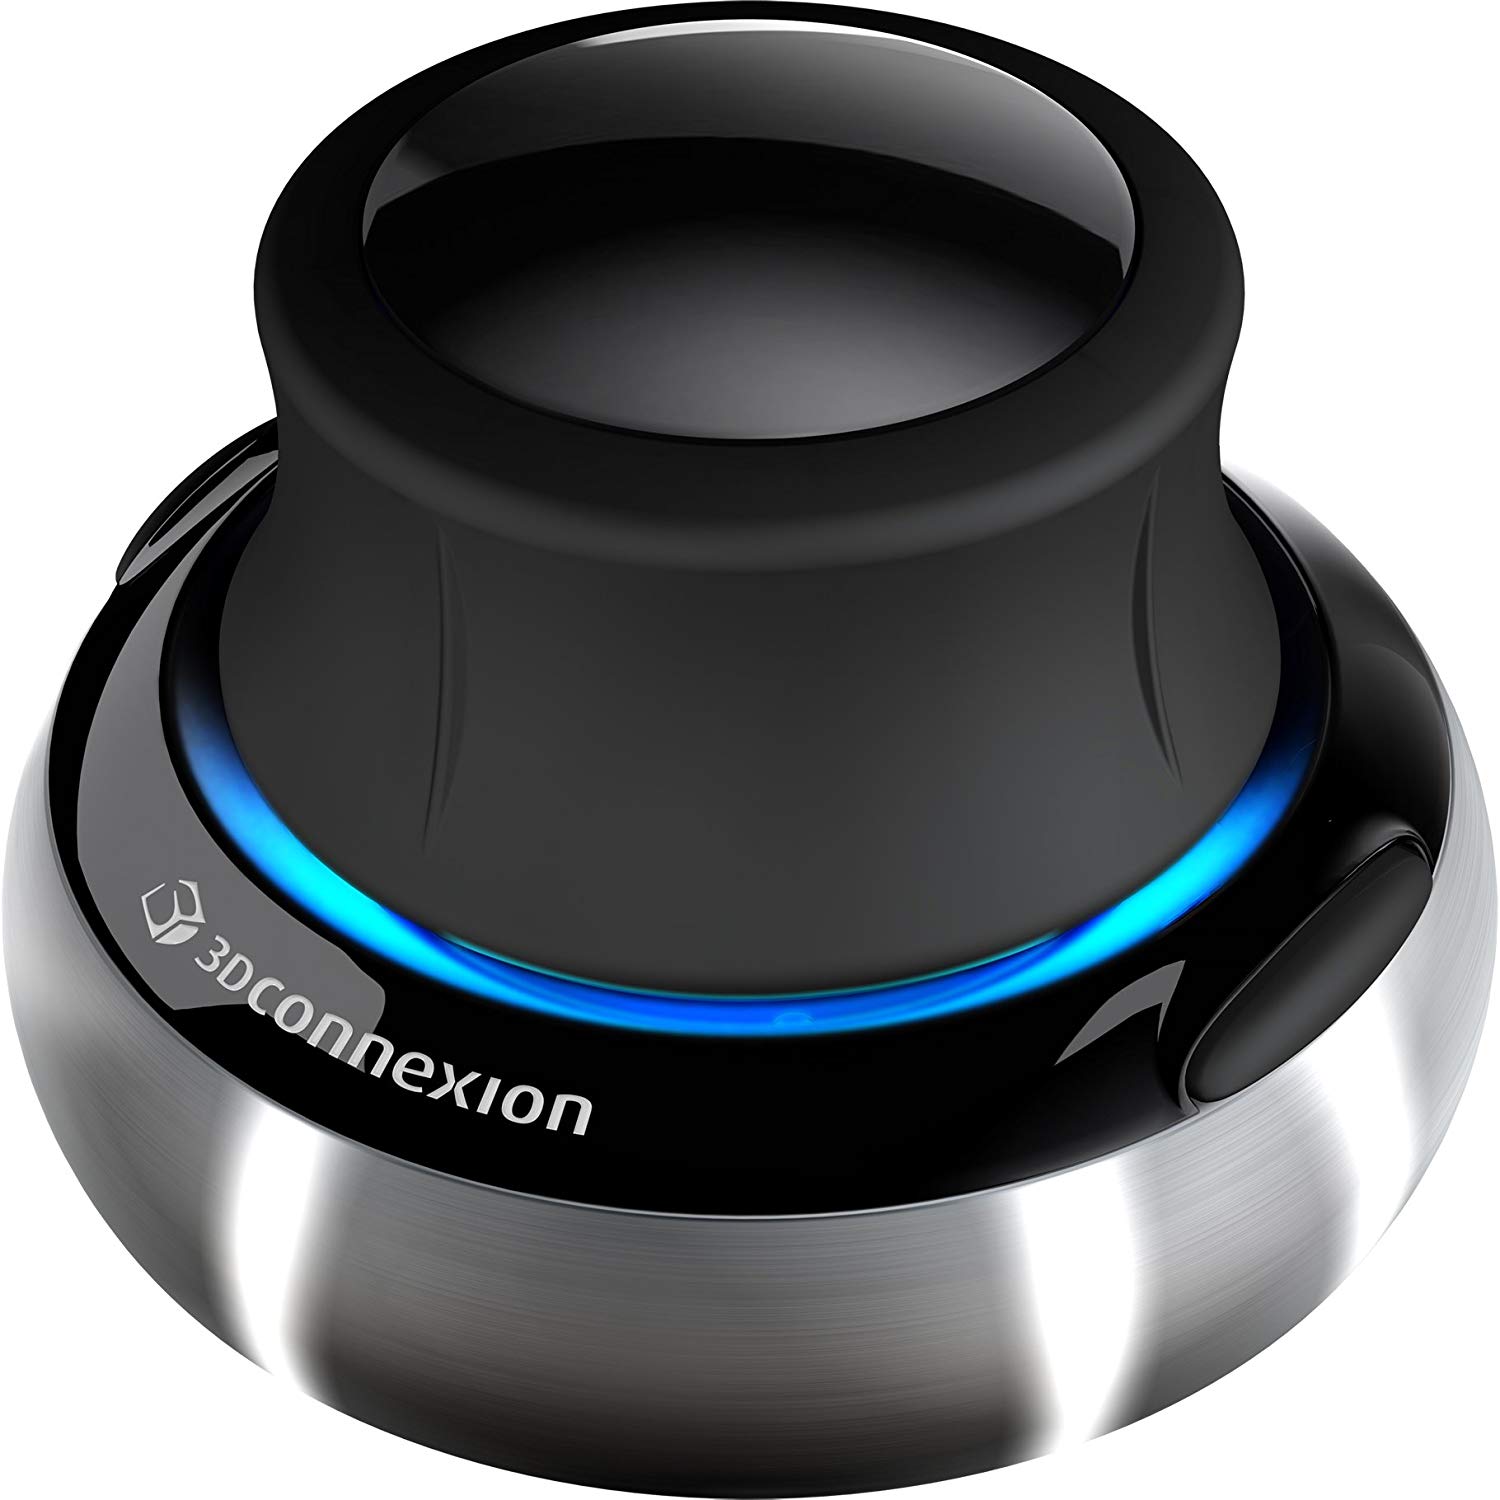 3Dconnexion 3DX-700028 SpaceNavigator 3D Mouse 1